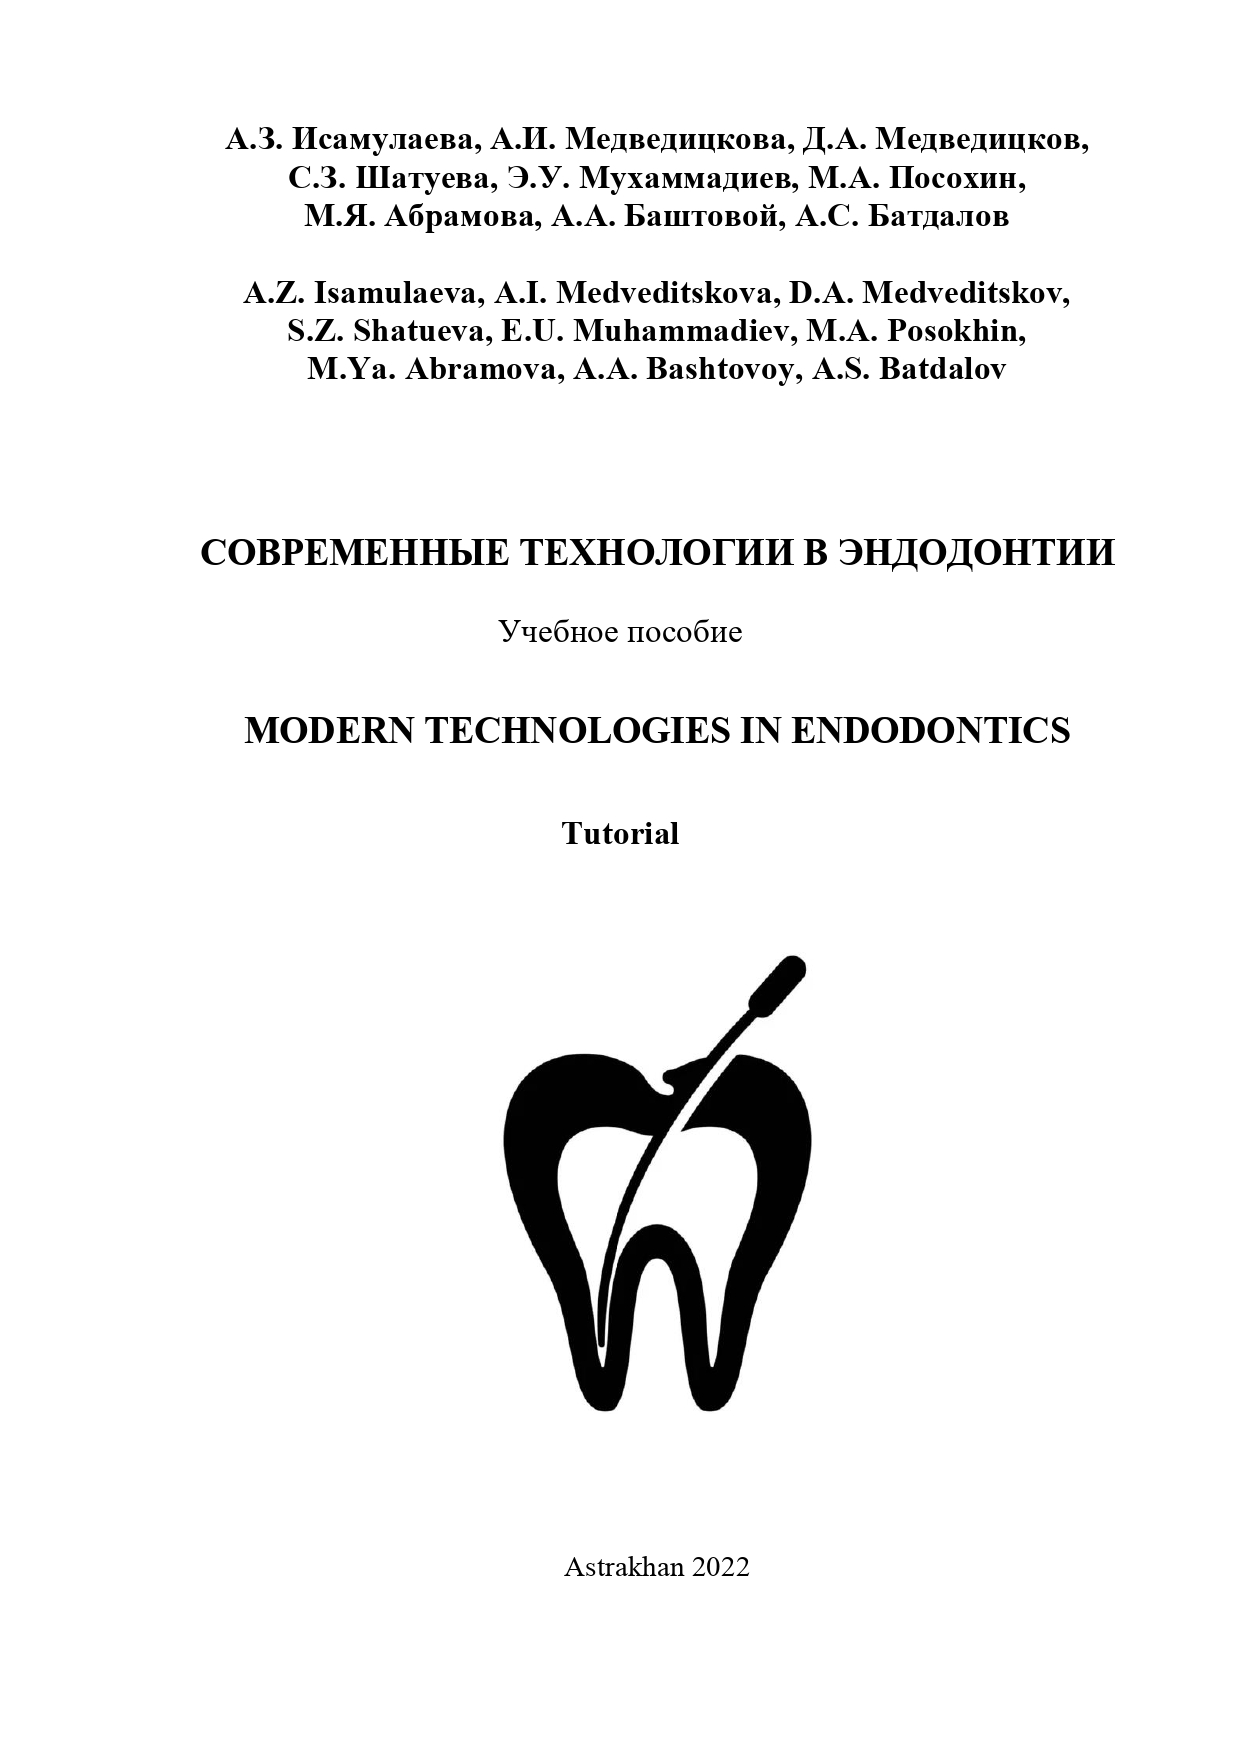 Современные технологии в эндодонтии: учебное пособие.